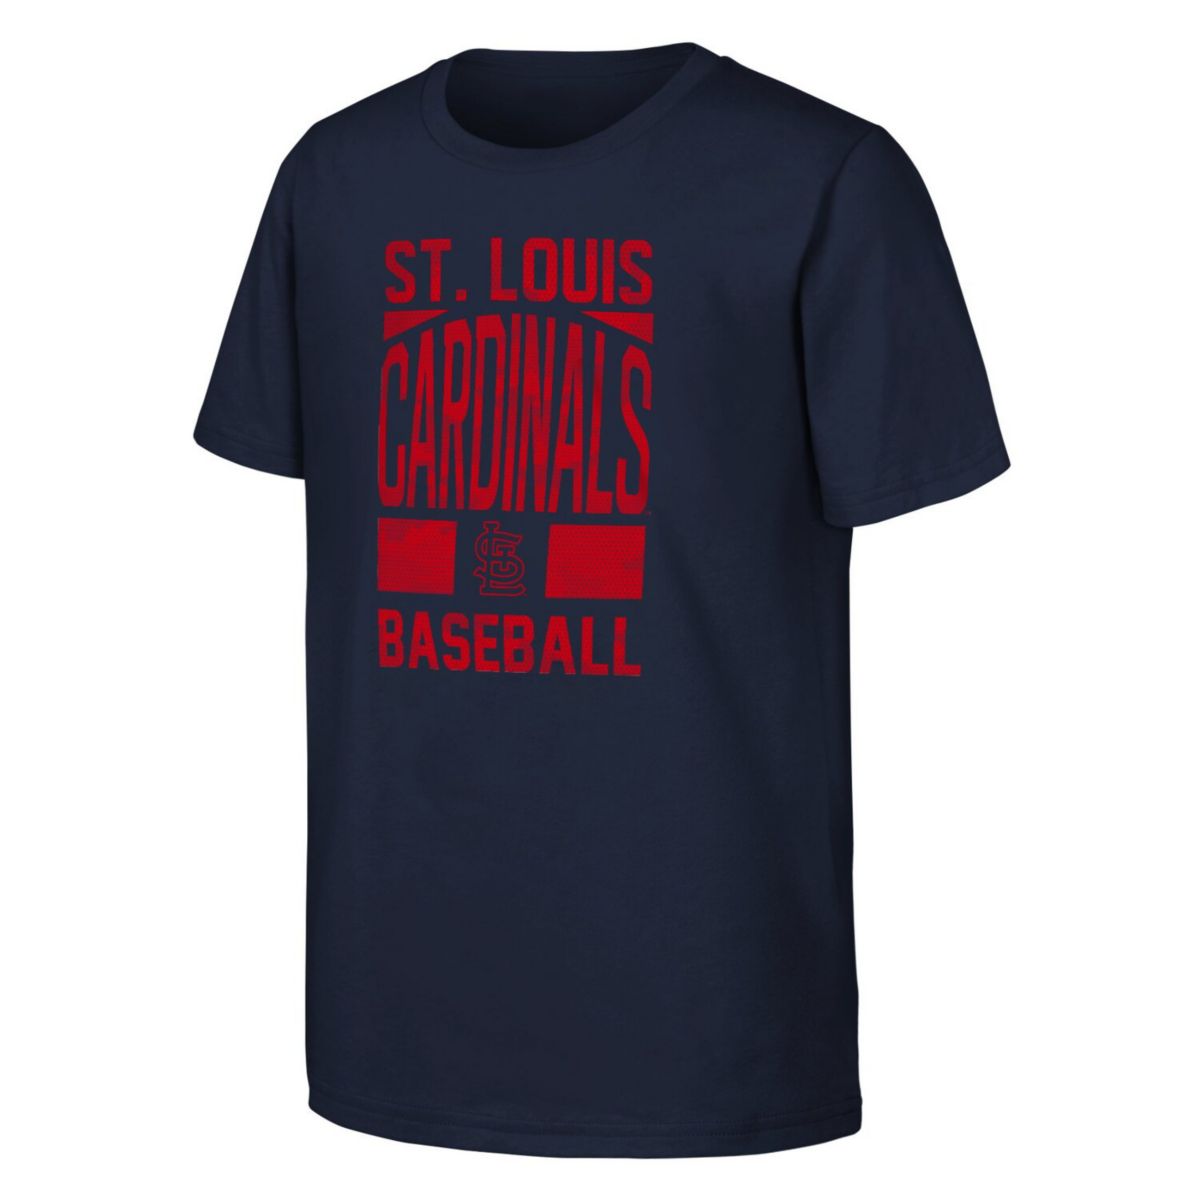 Темно-синяя футболка с абонементом Youth Fanatics на сезон St. Louis Cardinals Unbranded